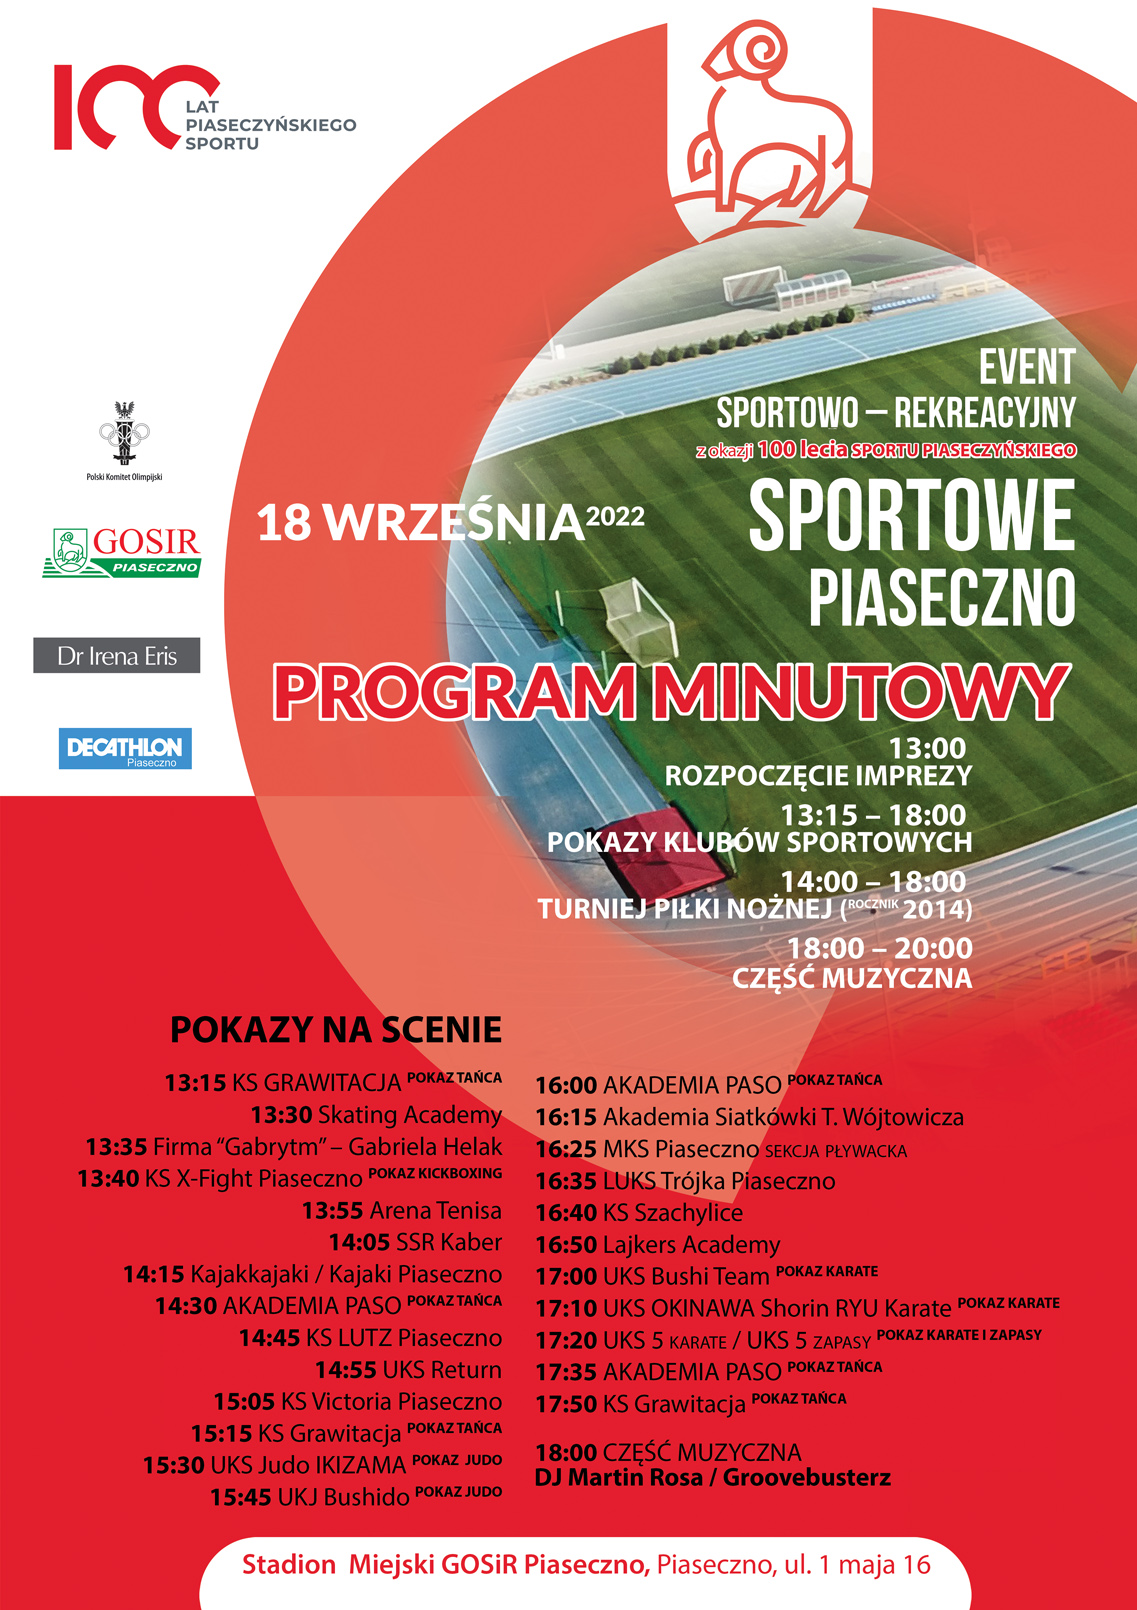 Plakat z programem wydarzeń Sportowe Piaseczno - 100 lat piaseczyńskiego sportu